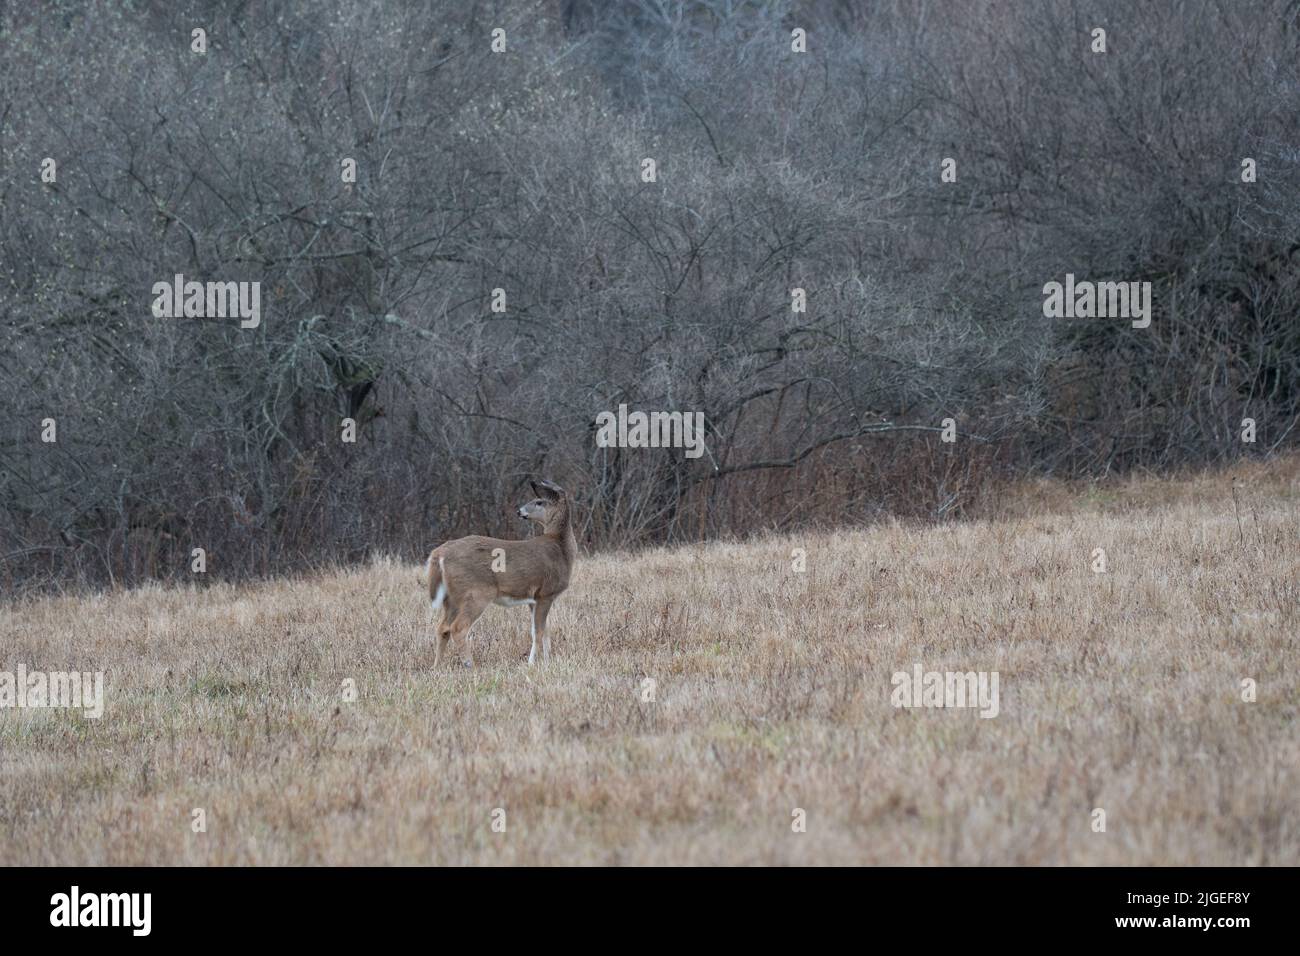 Cerf seul debout dans un champ hivernal Banque D'Images